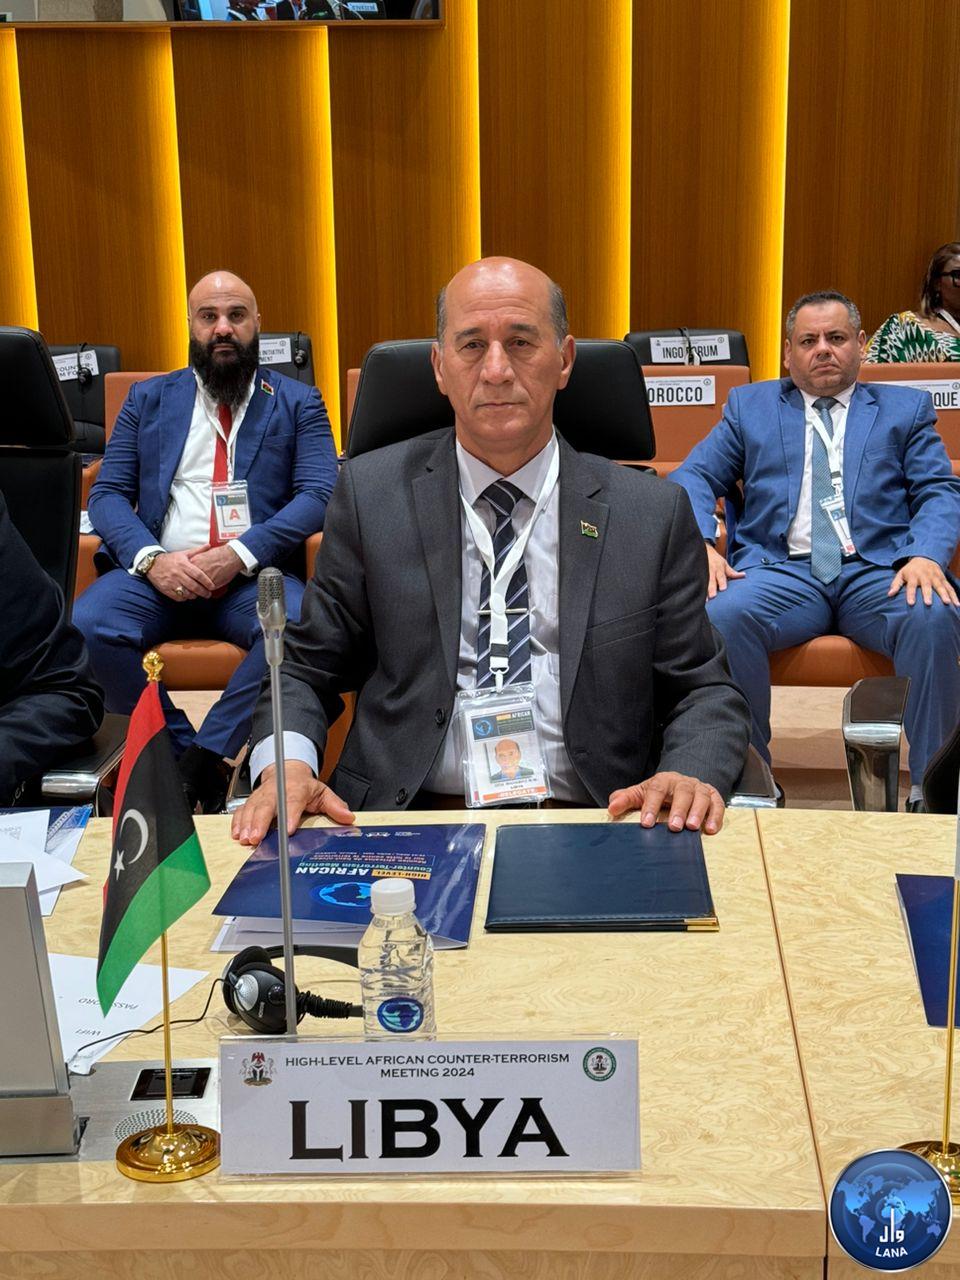 الوفد الليبي في اجتماع أبوجا لمكافحة الارهاب في أفريقيا : ليبيا في القضاء علي الجماعات الإرهابية .